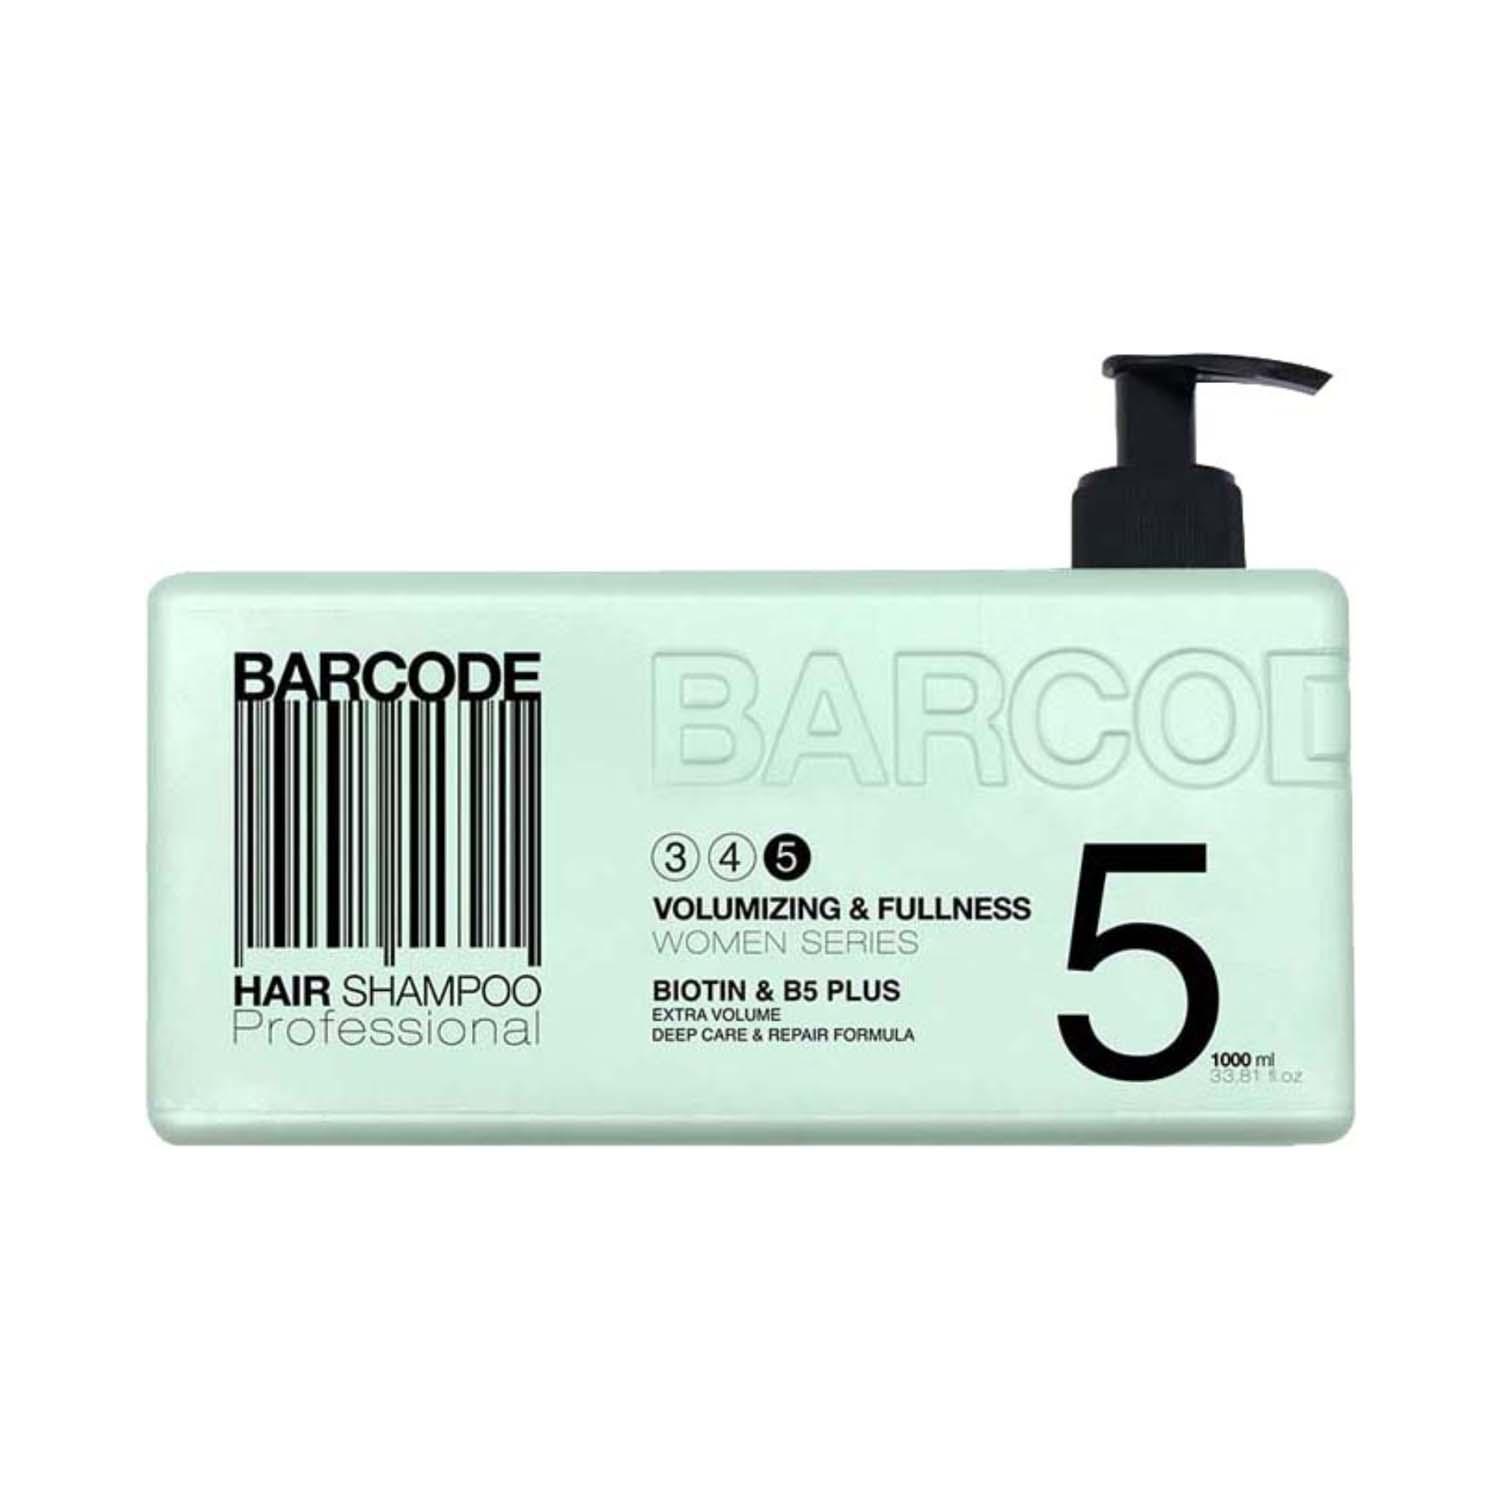 Barcode Professional | Barcode Professional Volumizing & Fullness Hair Shampoo - BCSH003 (1000 ml)